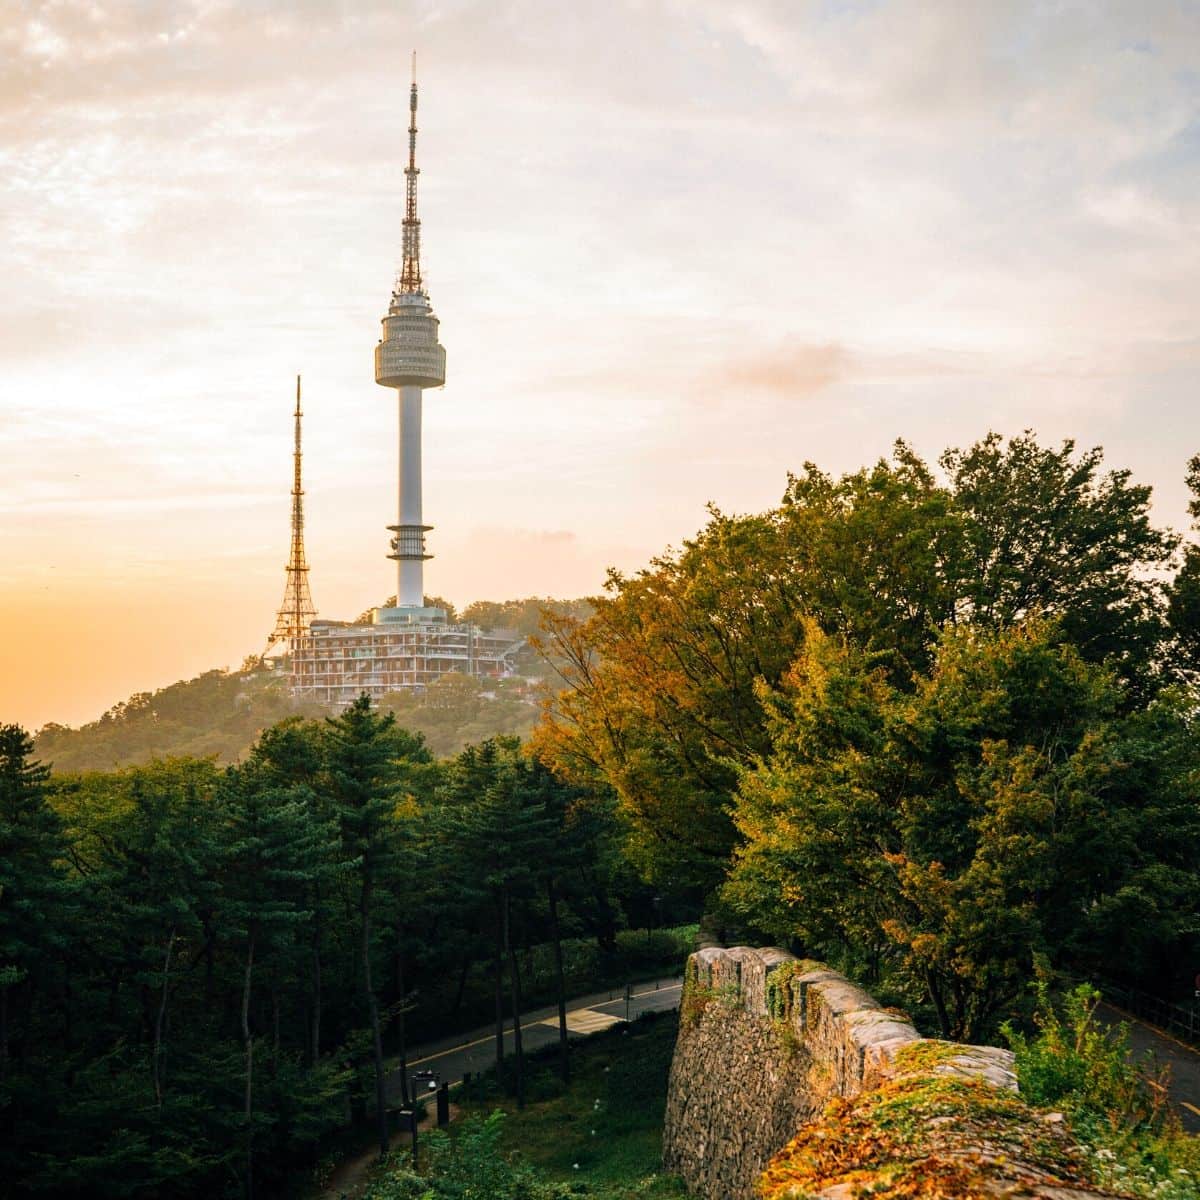 40 Destinasi Wisata Terbaik Di Seoul Yang Wajib Kamu Kunjungi Part 2